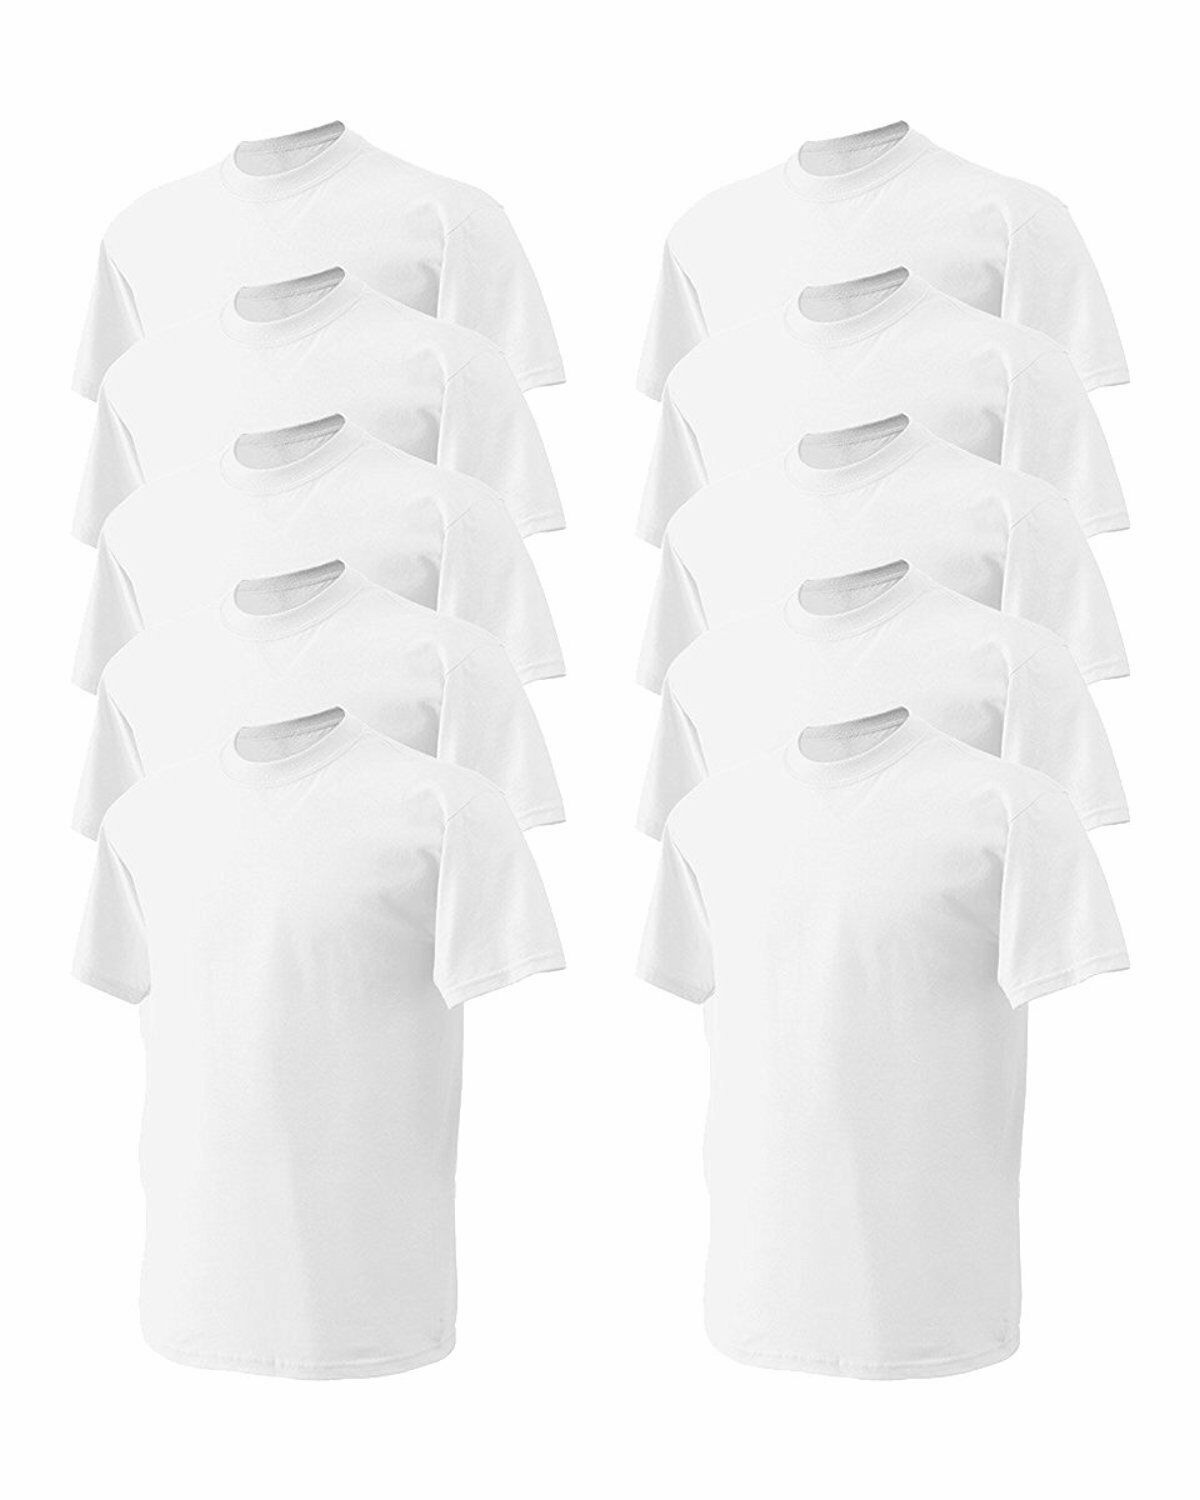 Gildan Mens DryBlend Black & White (Pack of 10) Bulk Lot Plain Adult T-Shirt Tee